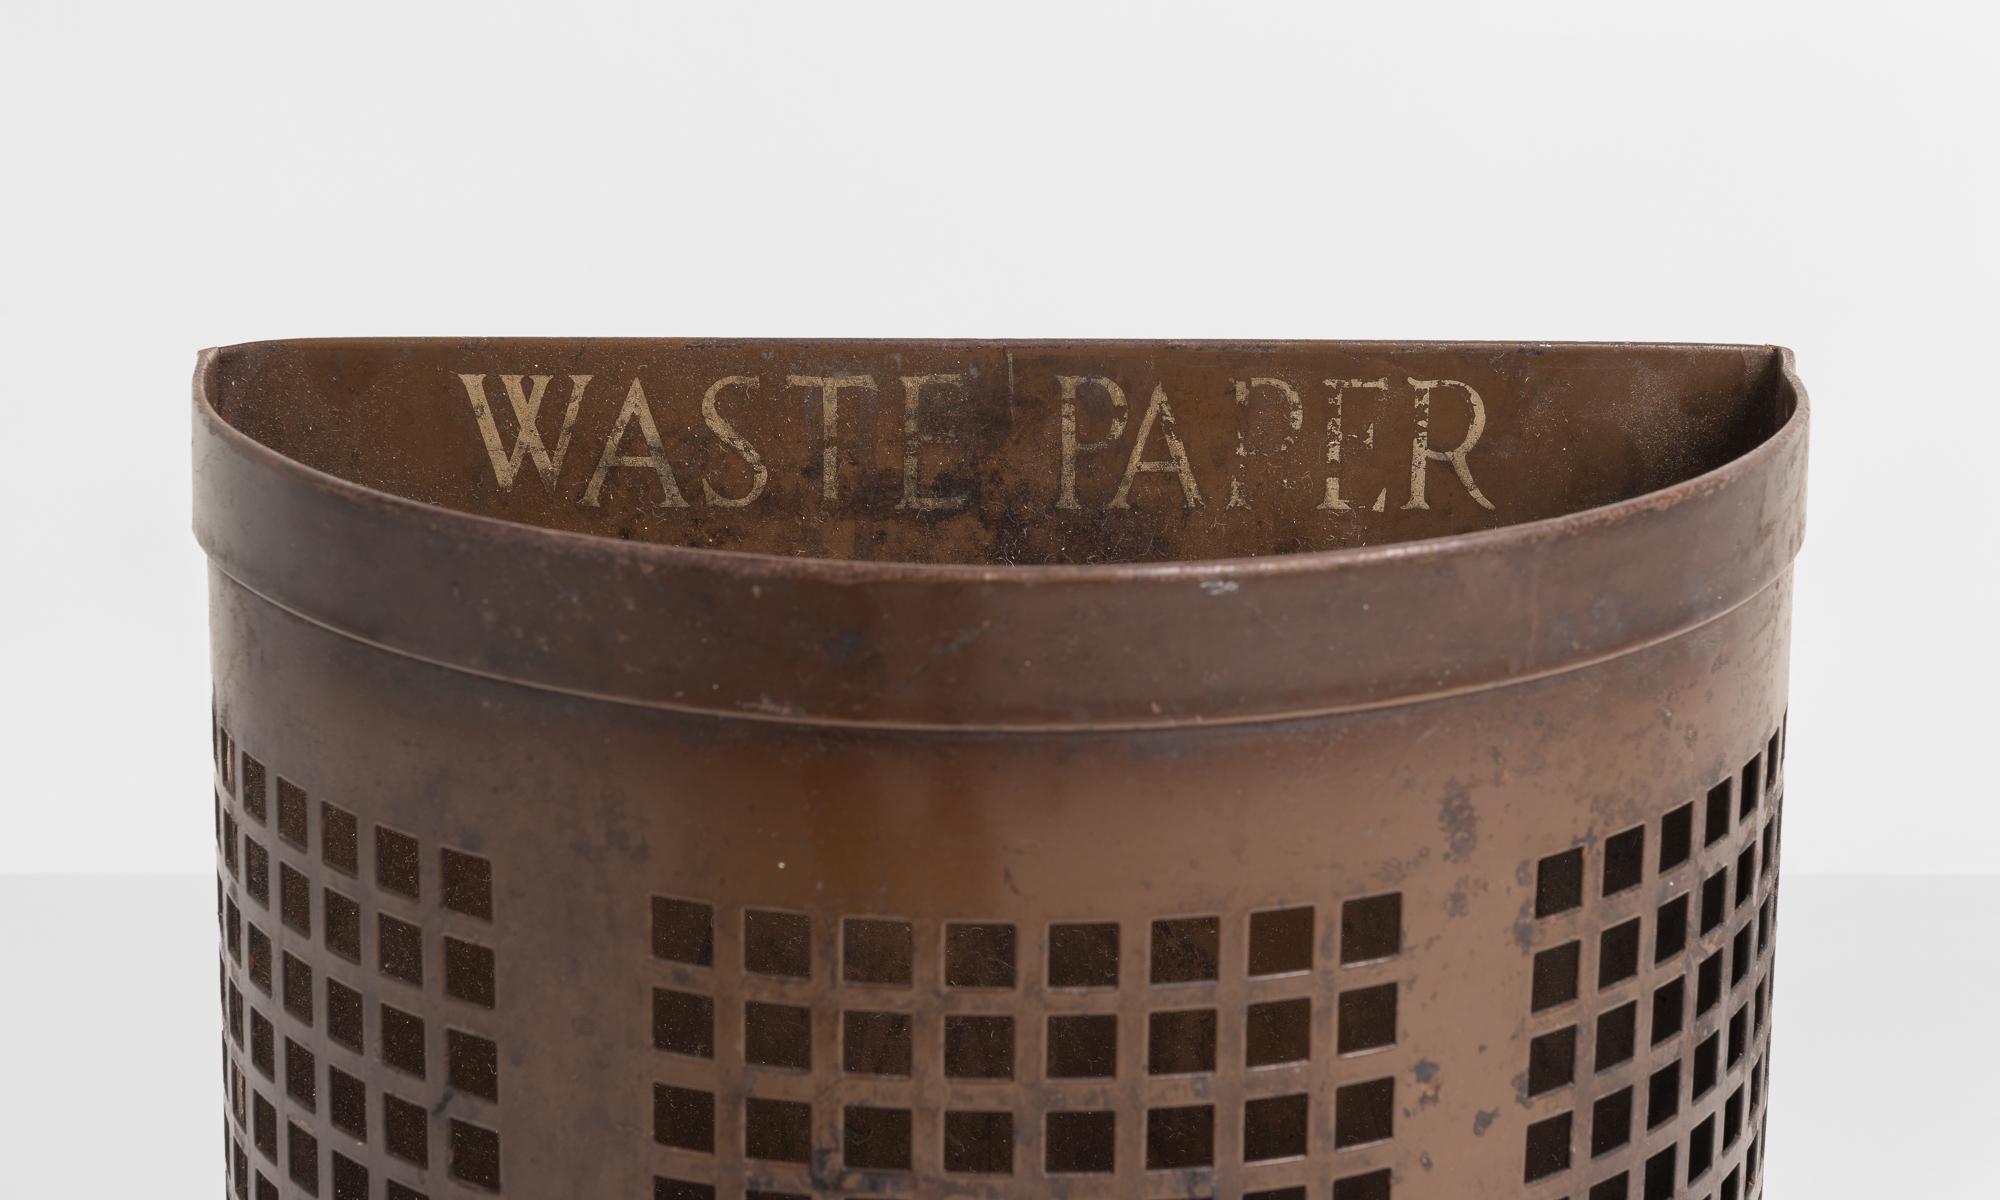 English Metal Waste Paper Basket, England, circa 1940